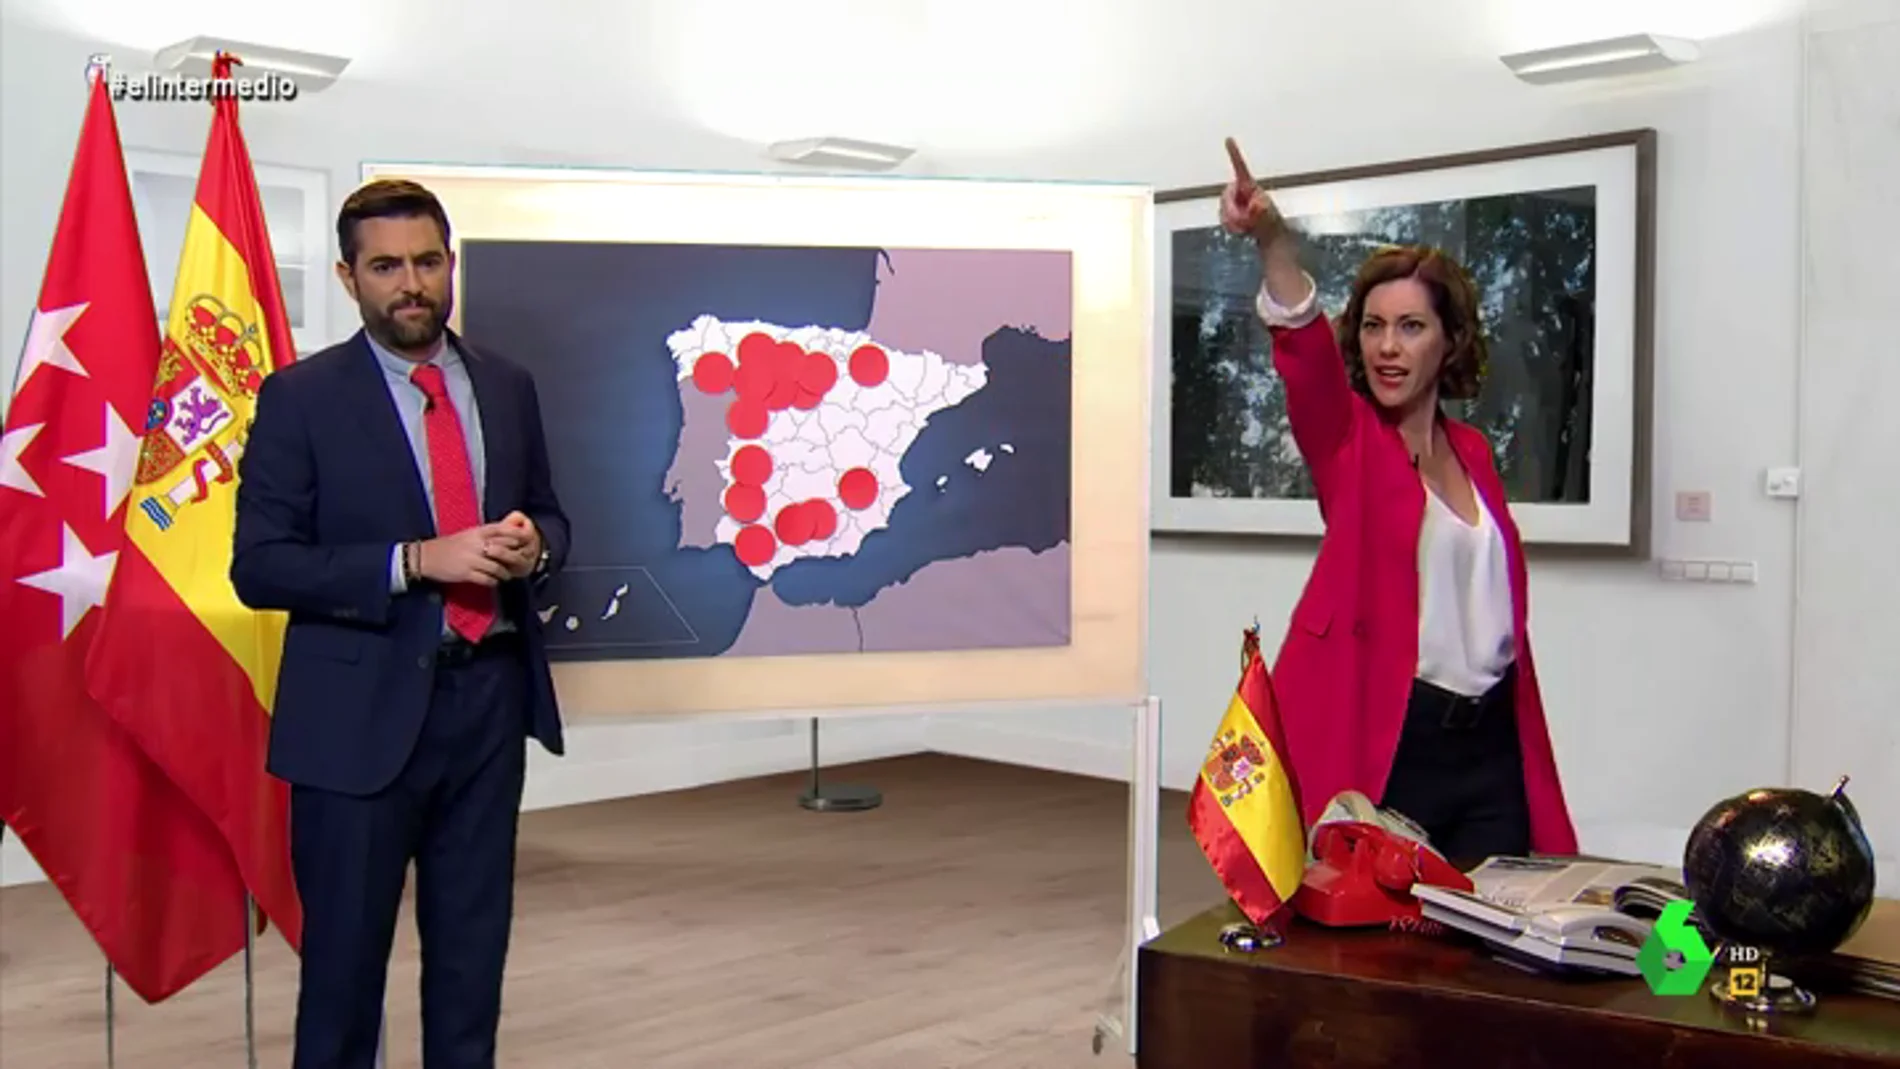 La 'reacción' de Ayuso al conocer las restricciones: "¡Toda España menos yo está confundida, ¡quiero francotiradores!"